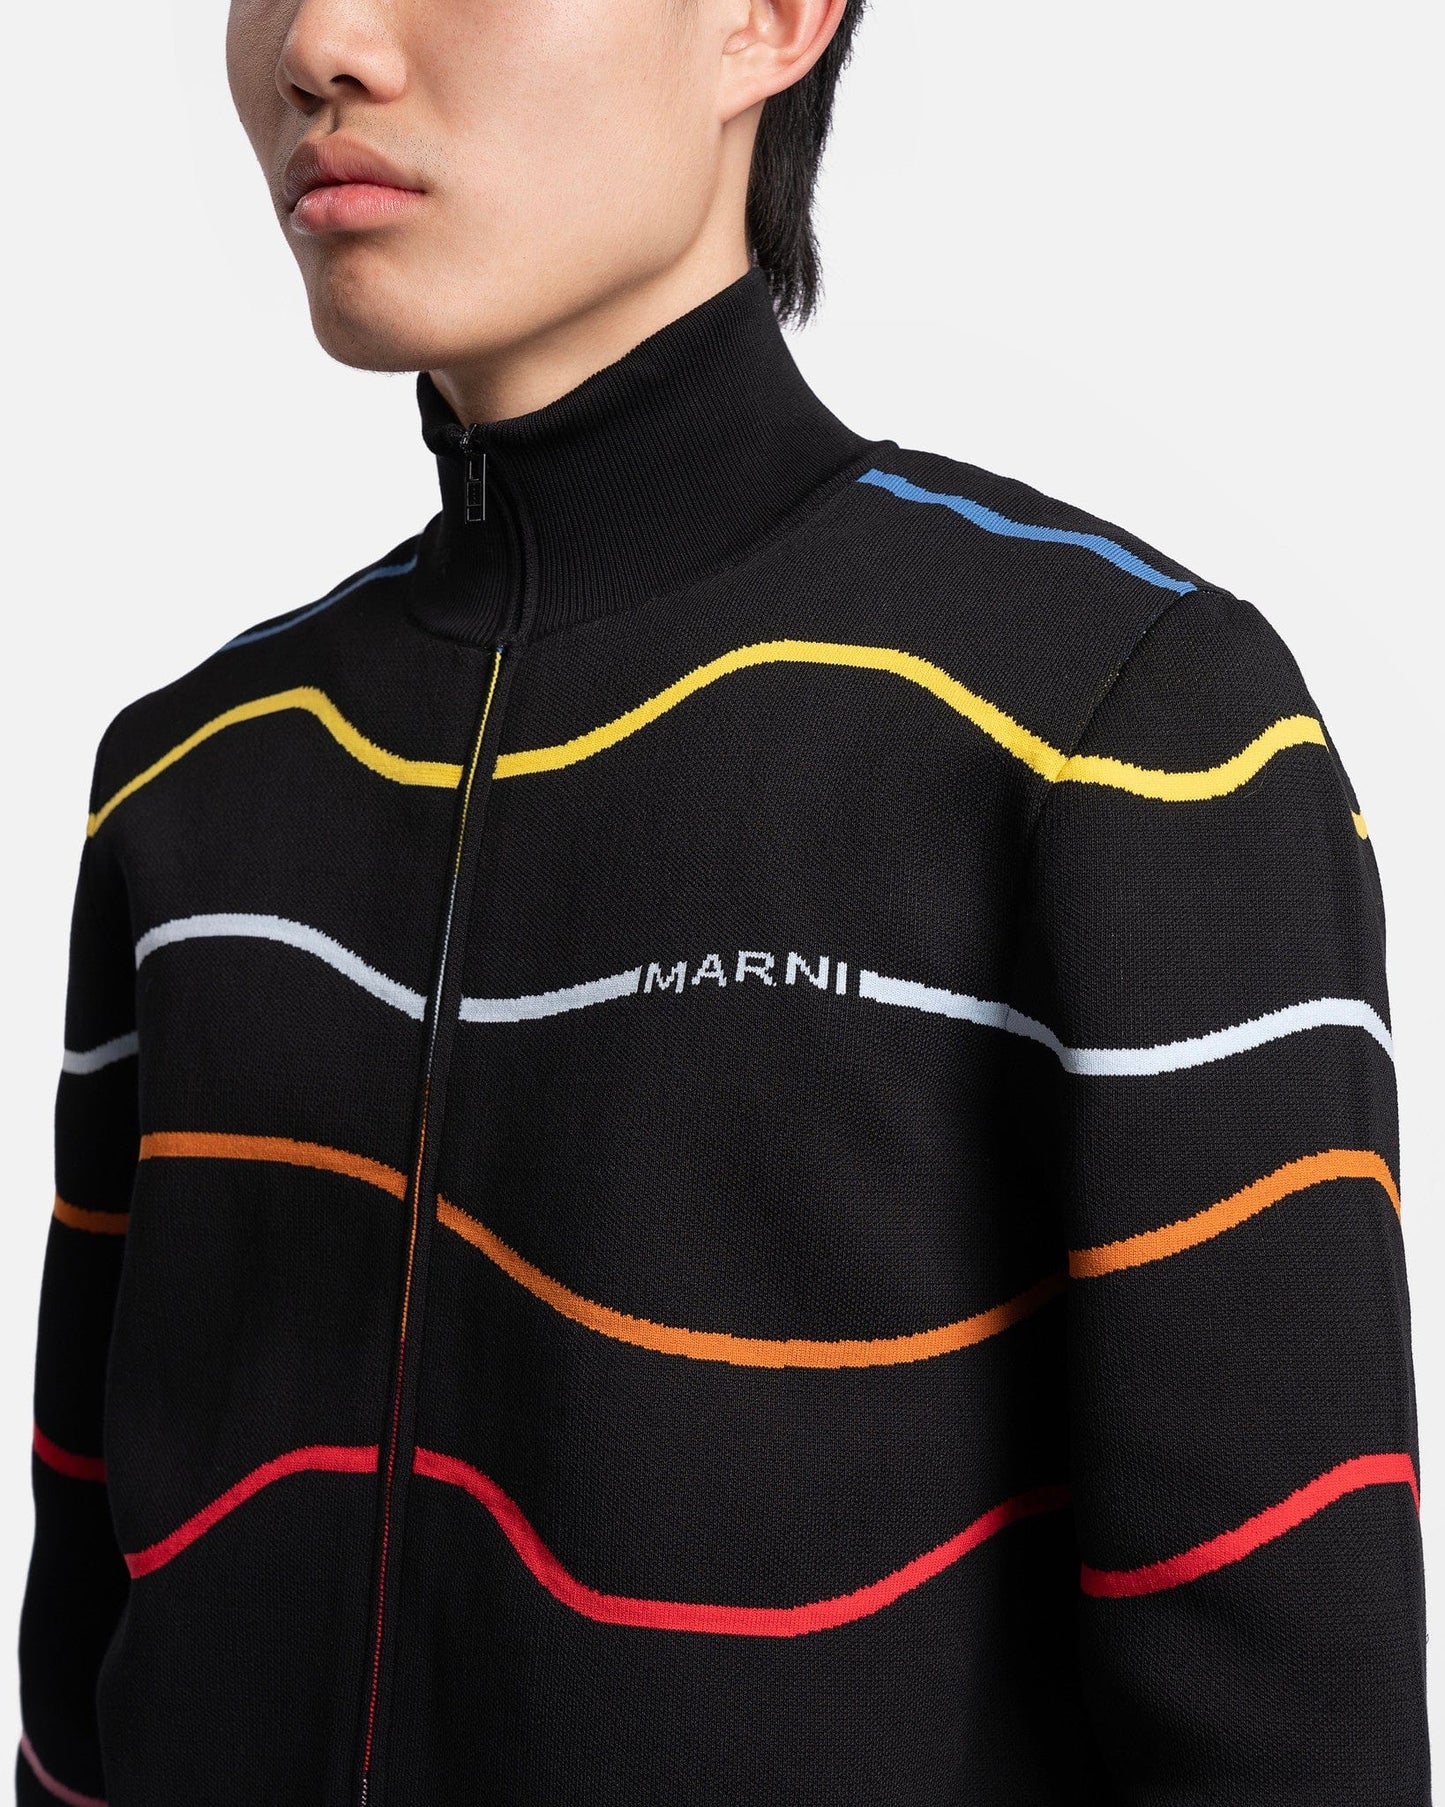 Marni Men's Sweater Techno Cotton Rainbow Cardigan in Multi